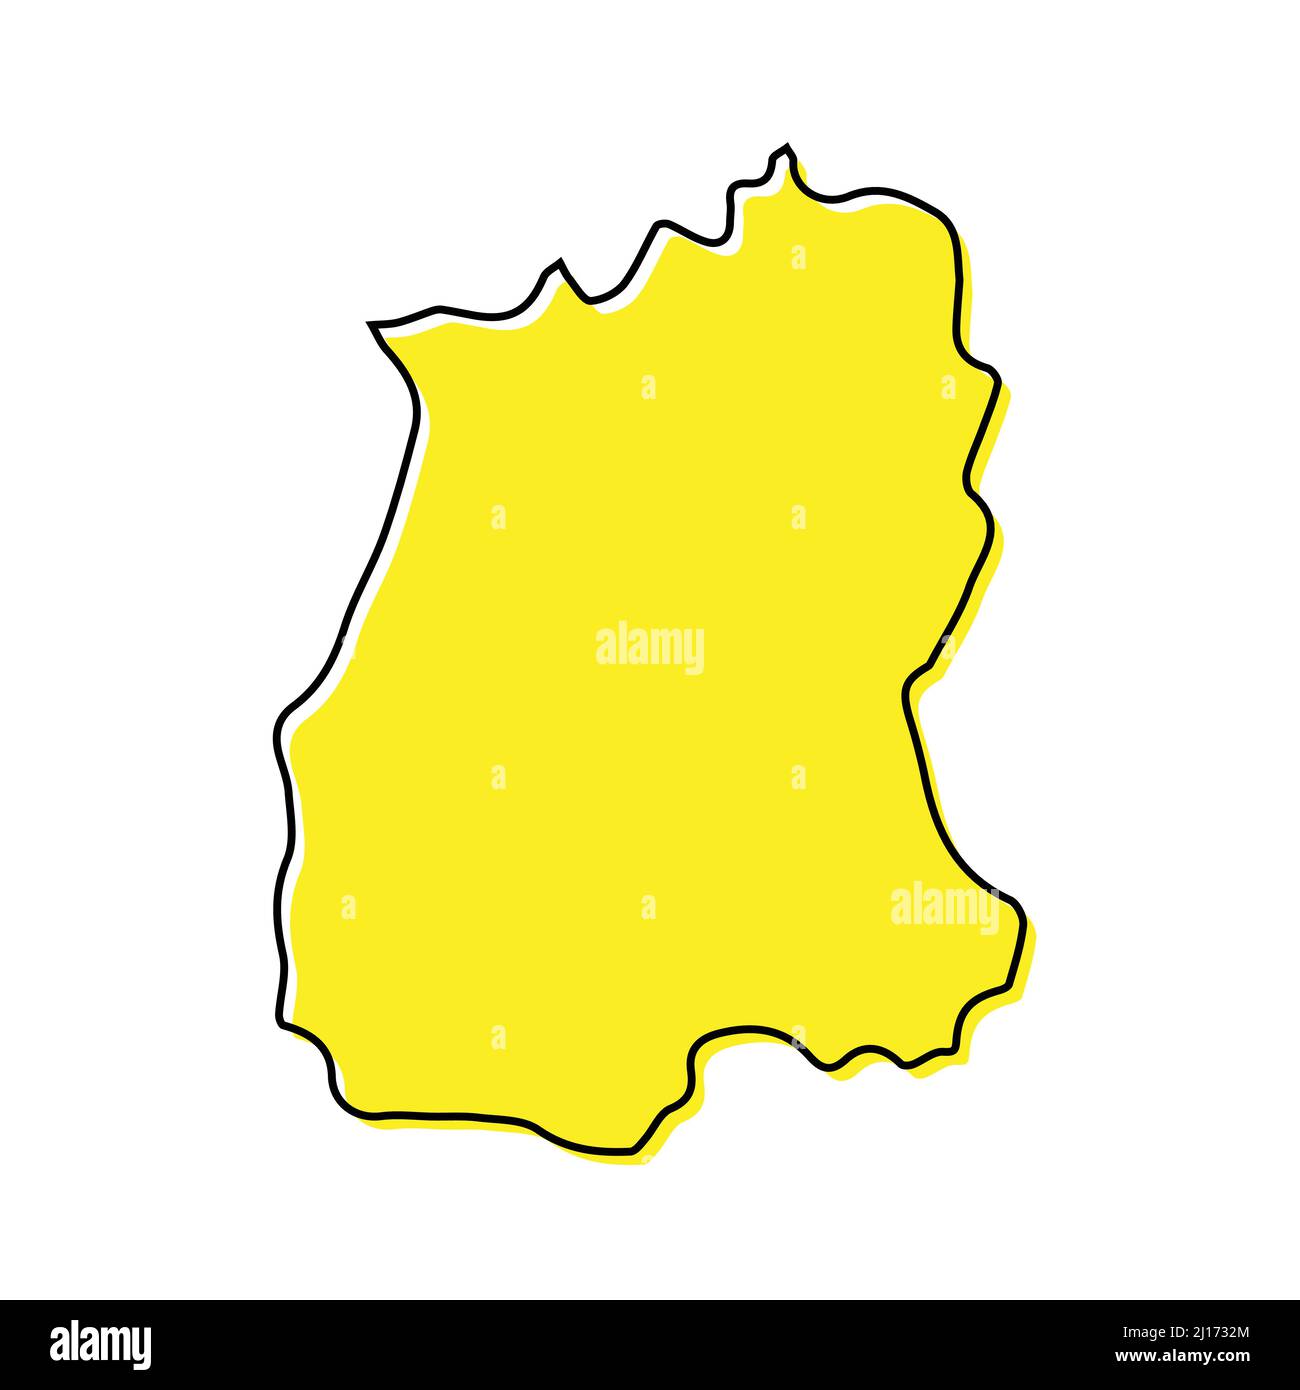 La mappa di Sikkim è uno stato dell'India. Design minimalista stilizzato Illustrazione Vettoriale